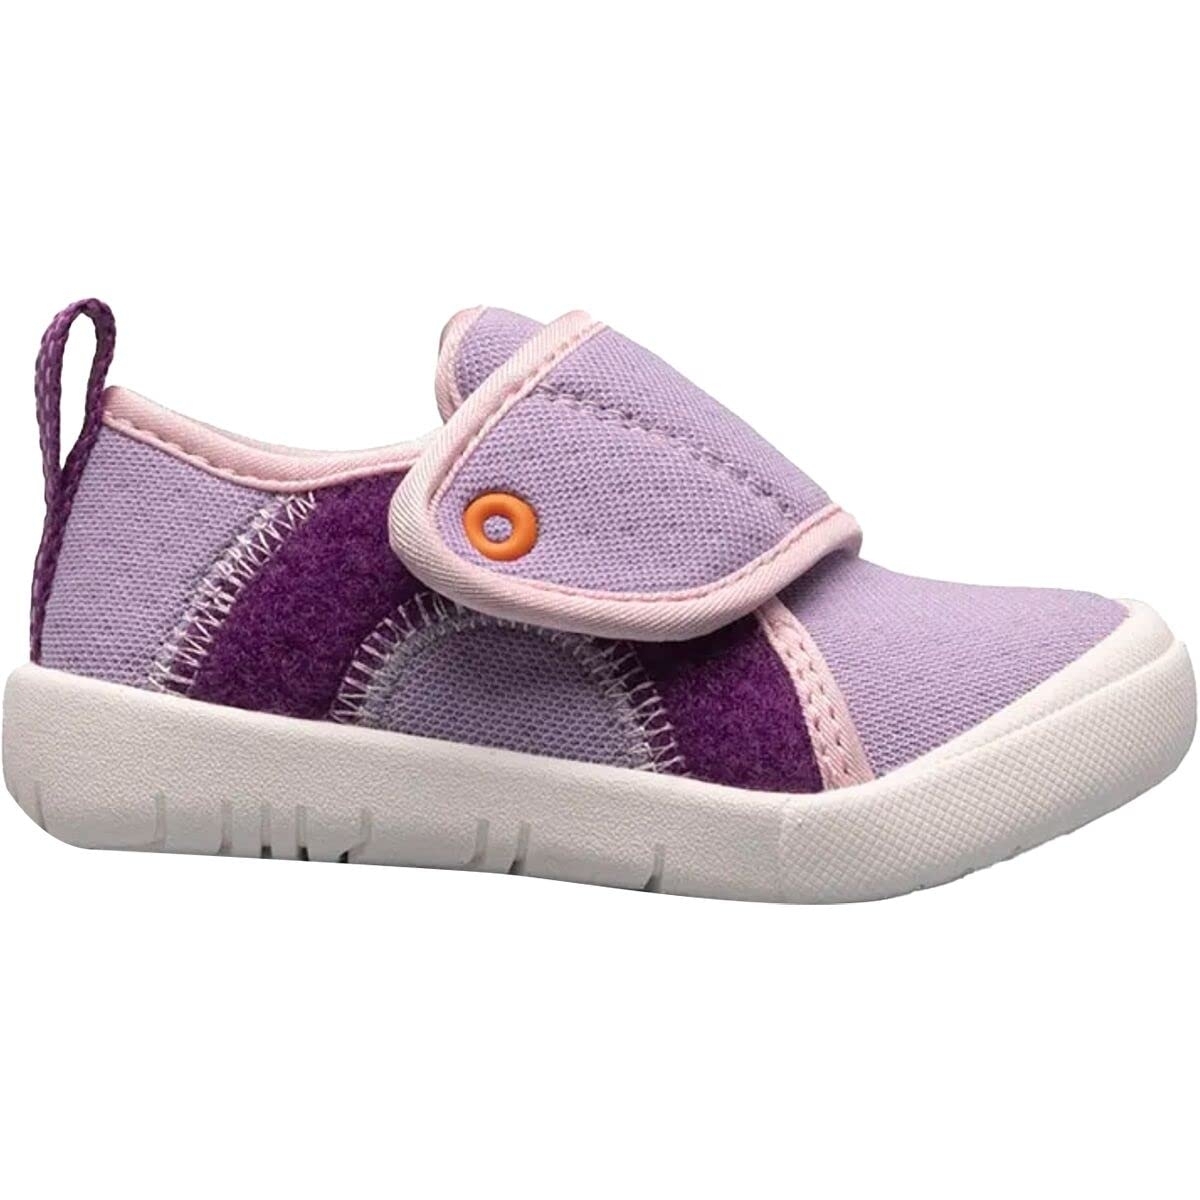 BOGS Unisex Baby Kicker Hook And Loop Shoe Sneaker Lavender Multi - 72811I-541 1 LAVENDER MULTI - LAVENDER MULTI, 5 Toddler